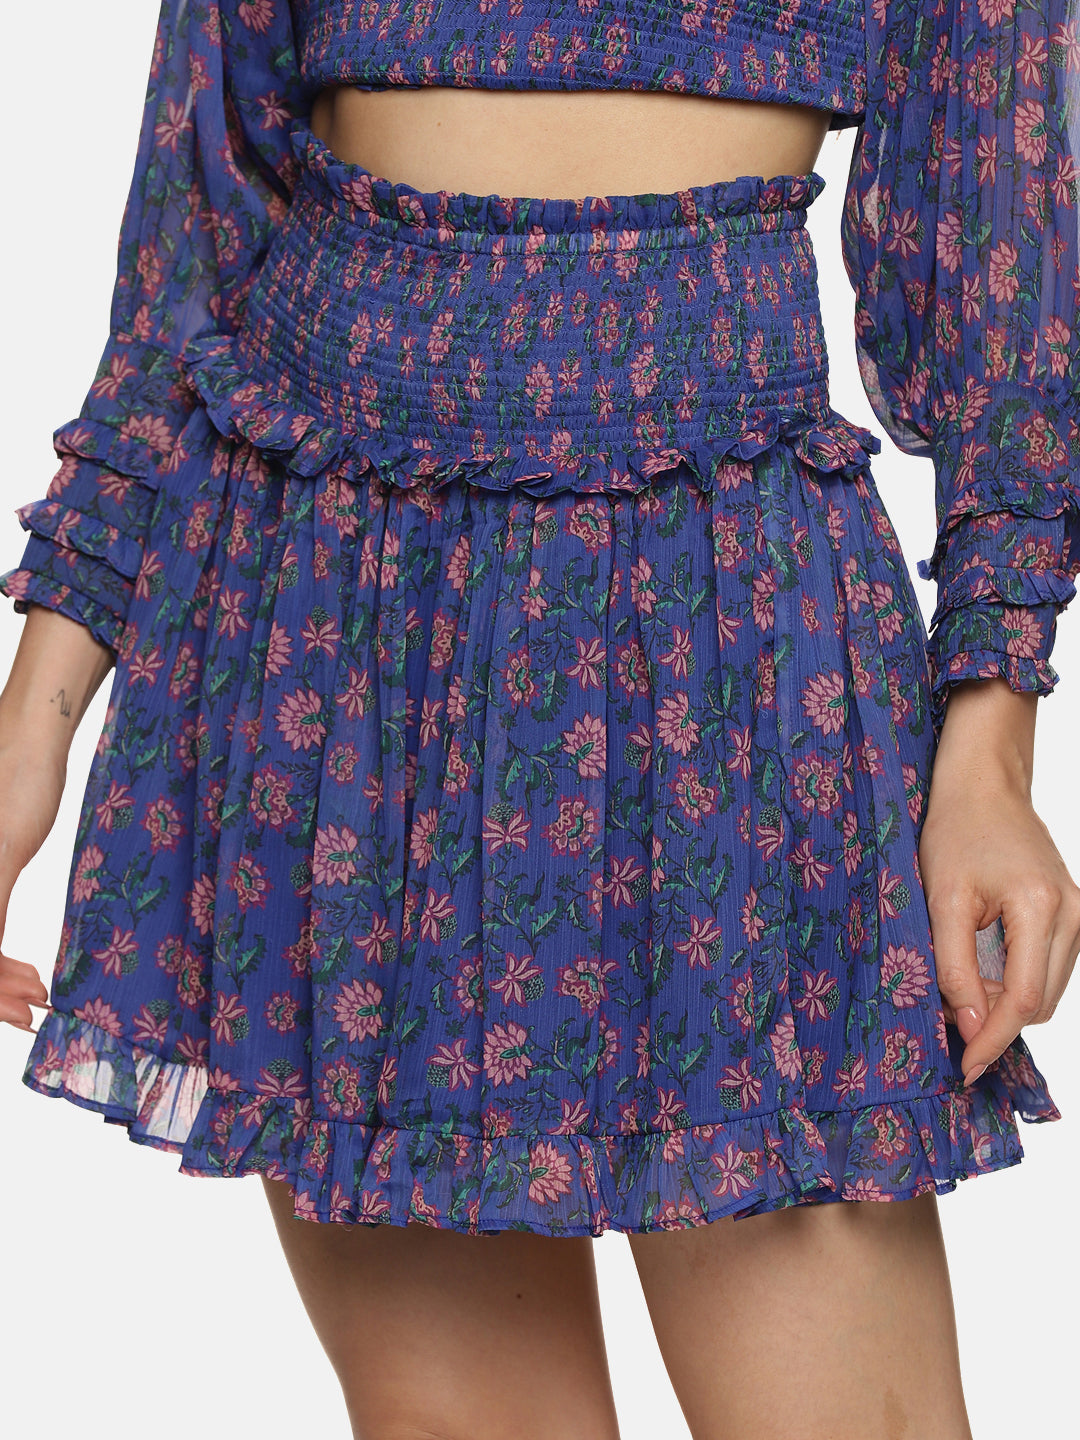 IS.U Floral Blue Smocked Mini Skirt